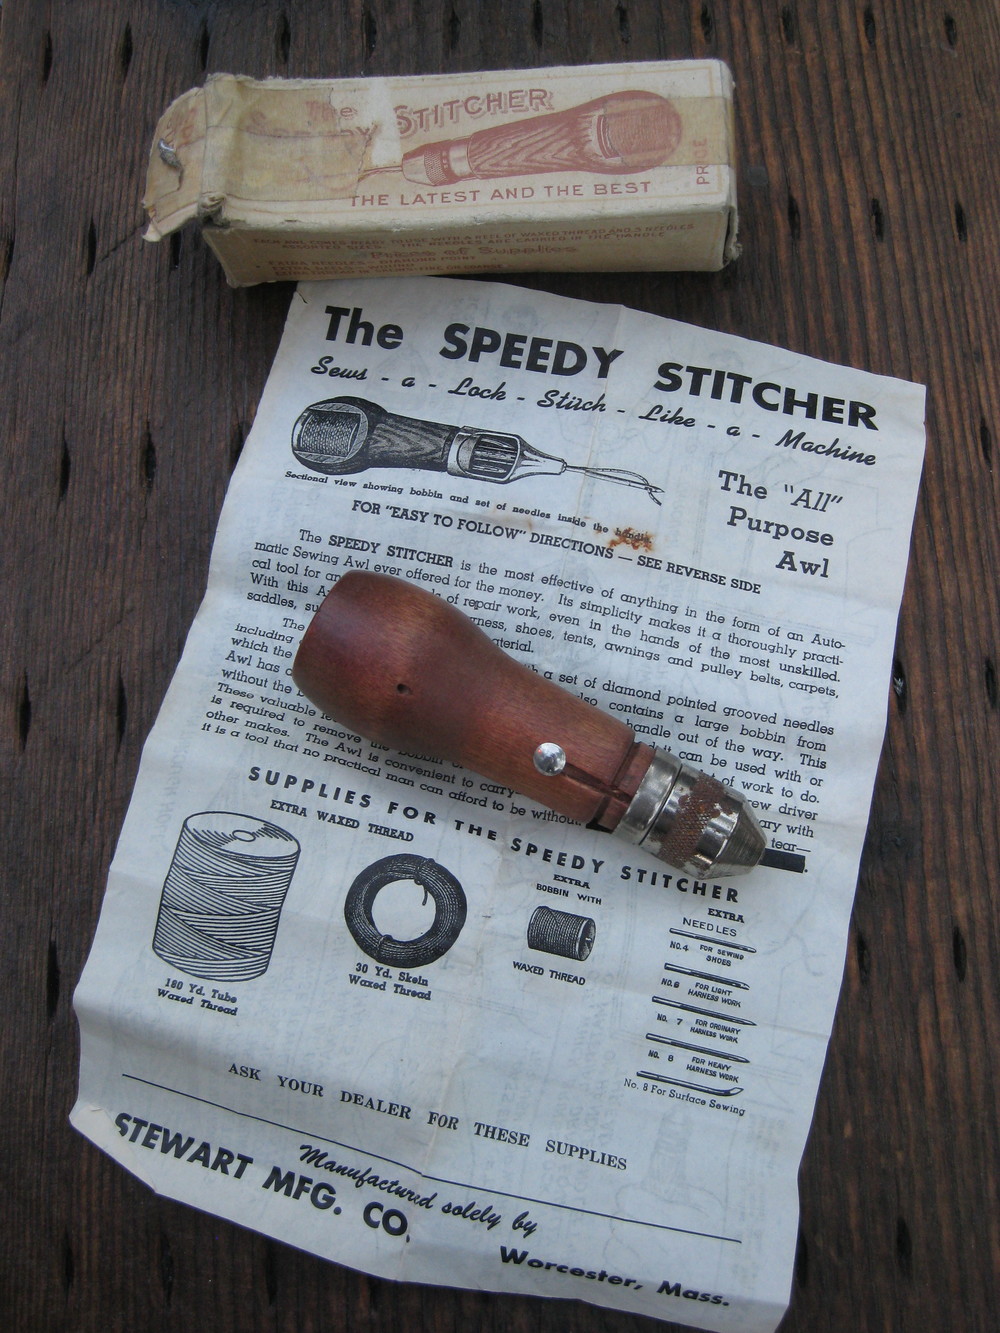 Speedy Stitcher Sewing Awl Kit - KnifeCenter - SEW110